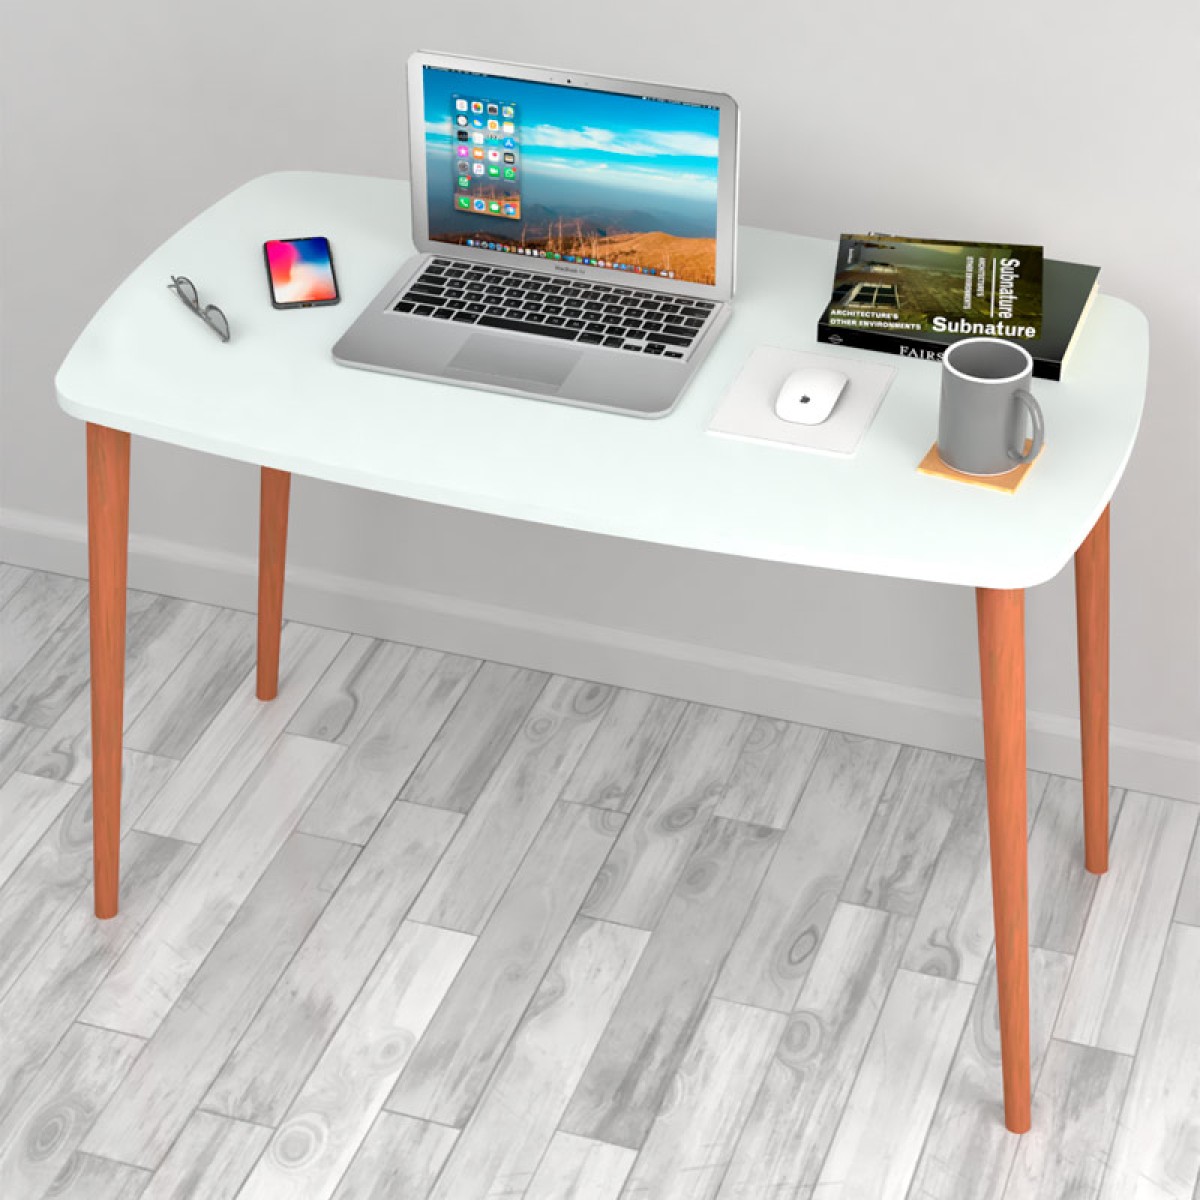 Γραφείο - τραπέζι μελαμίνης Deina  χρώμα λευκό 105x60x72εκ.